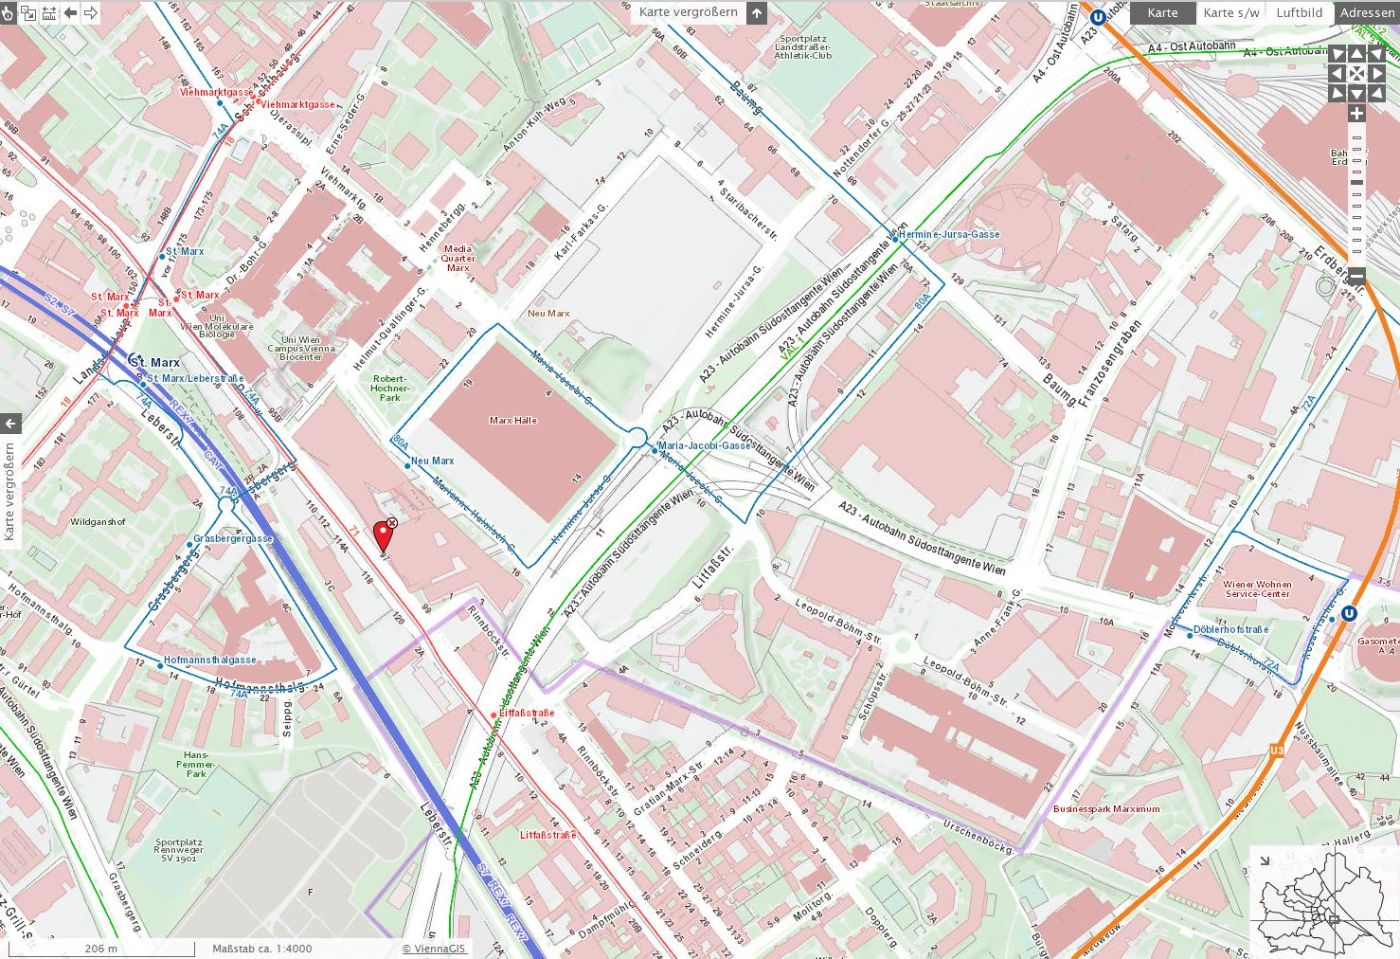 Stadtplan von Wien mit einer Markierung für den Standort der Verwaltungsakademie.